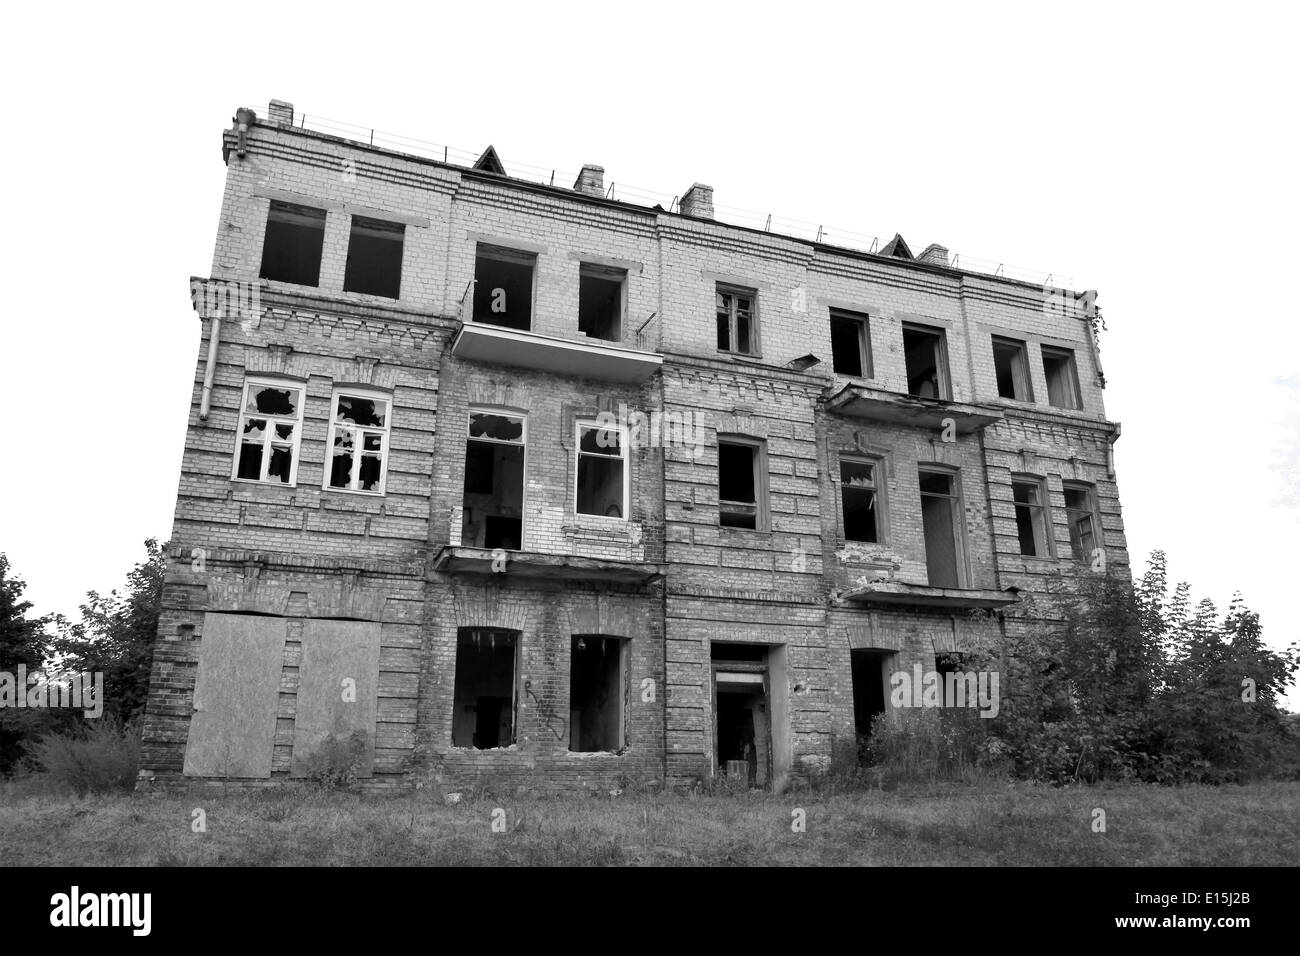 Le noir et blanc maison abandonnée isolated on white Banque D'Images